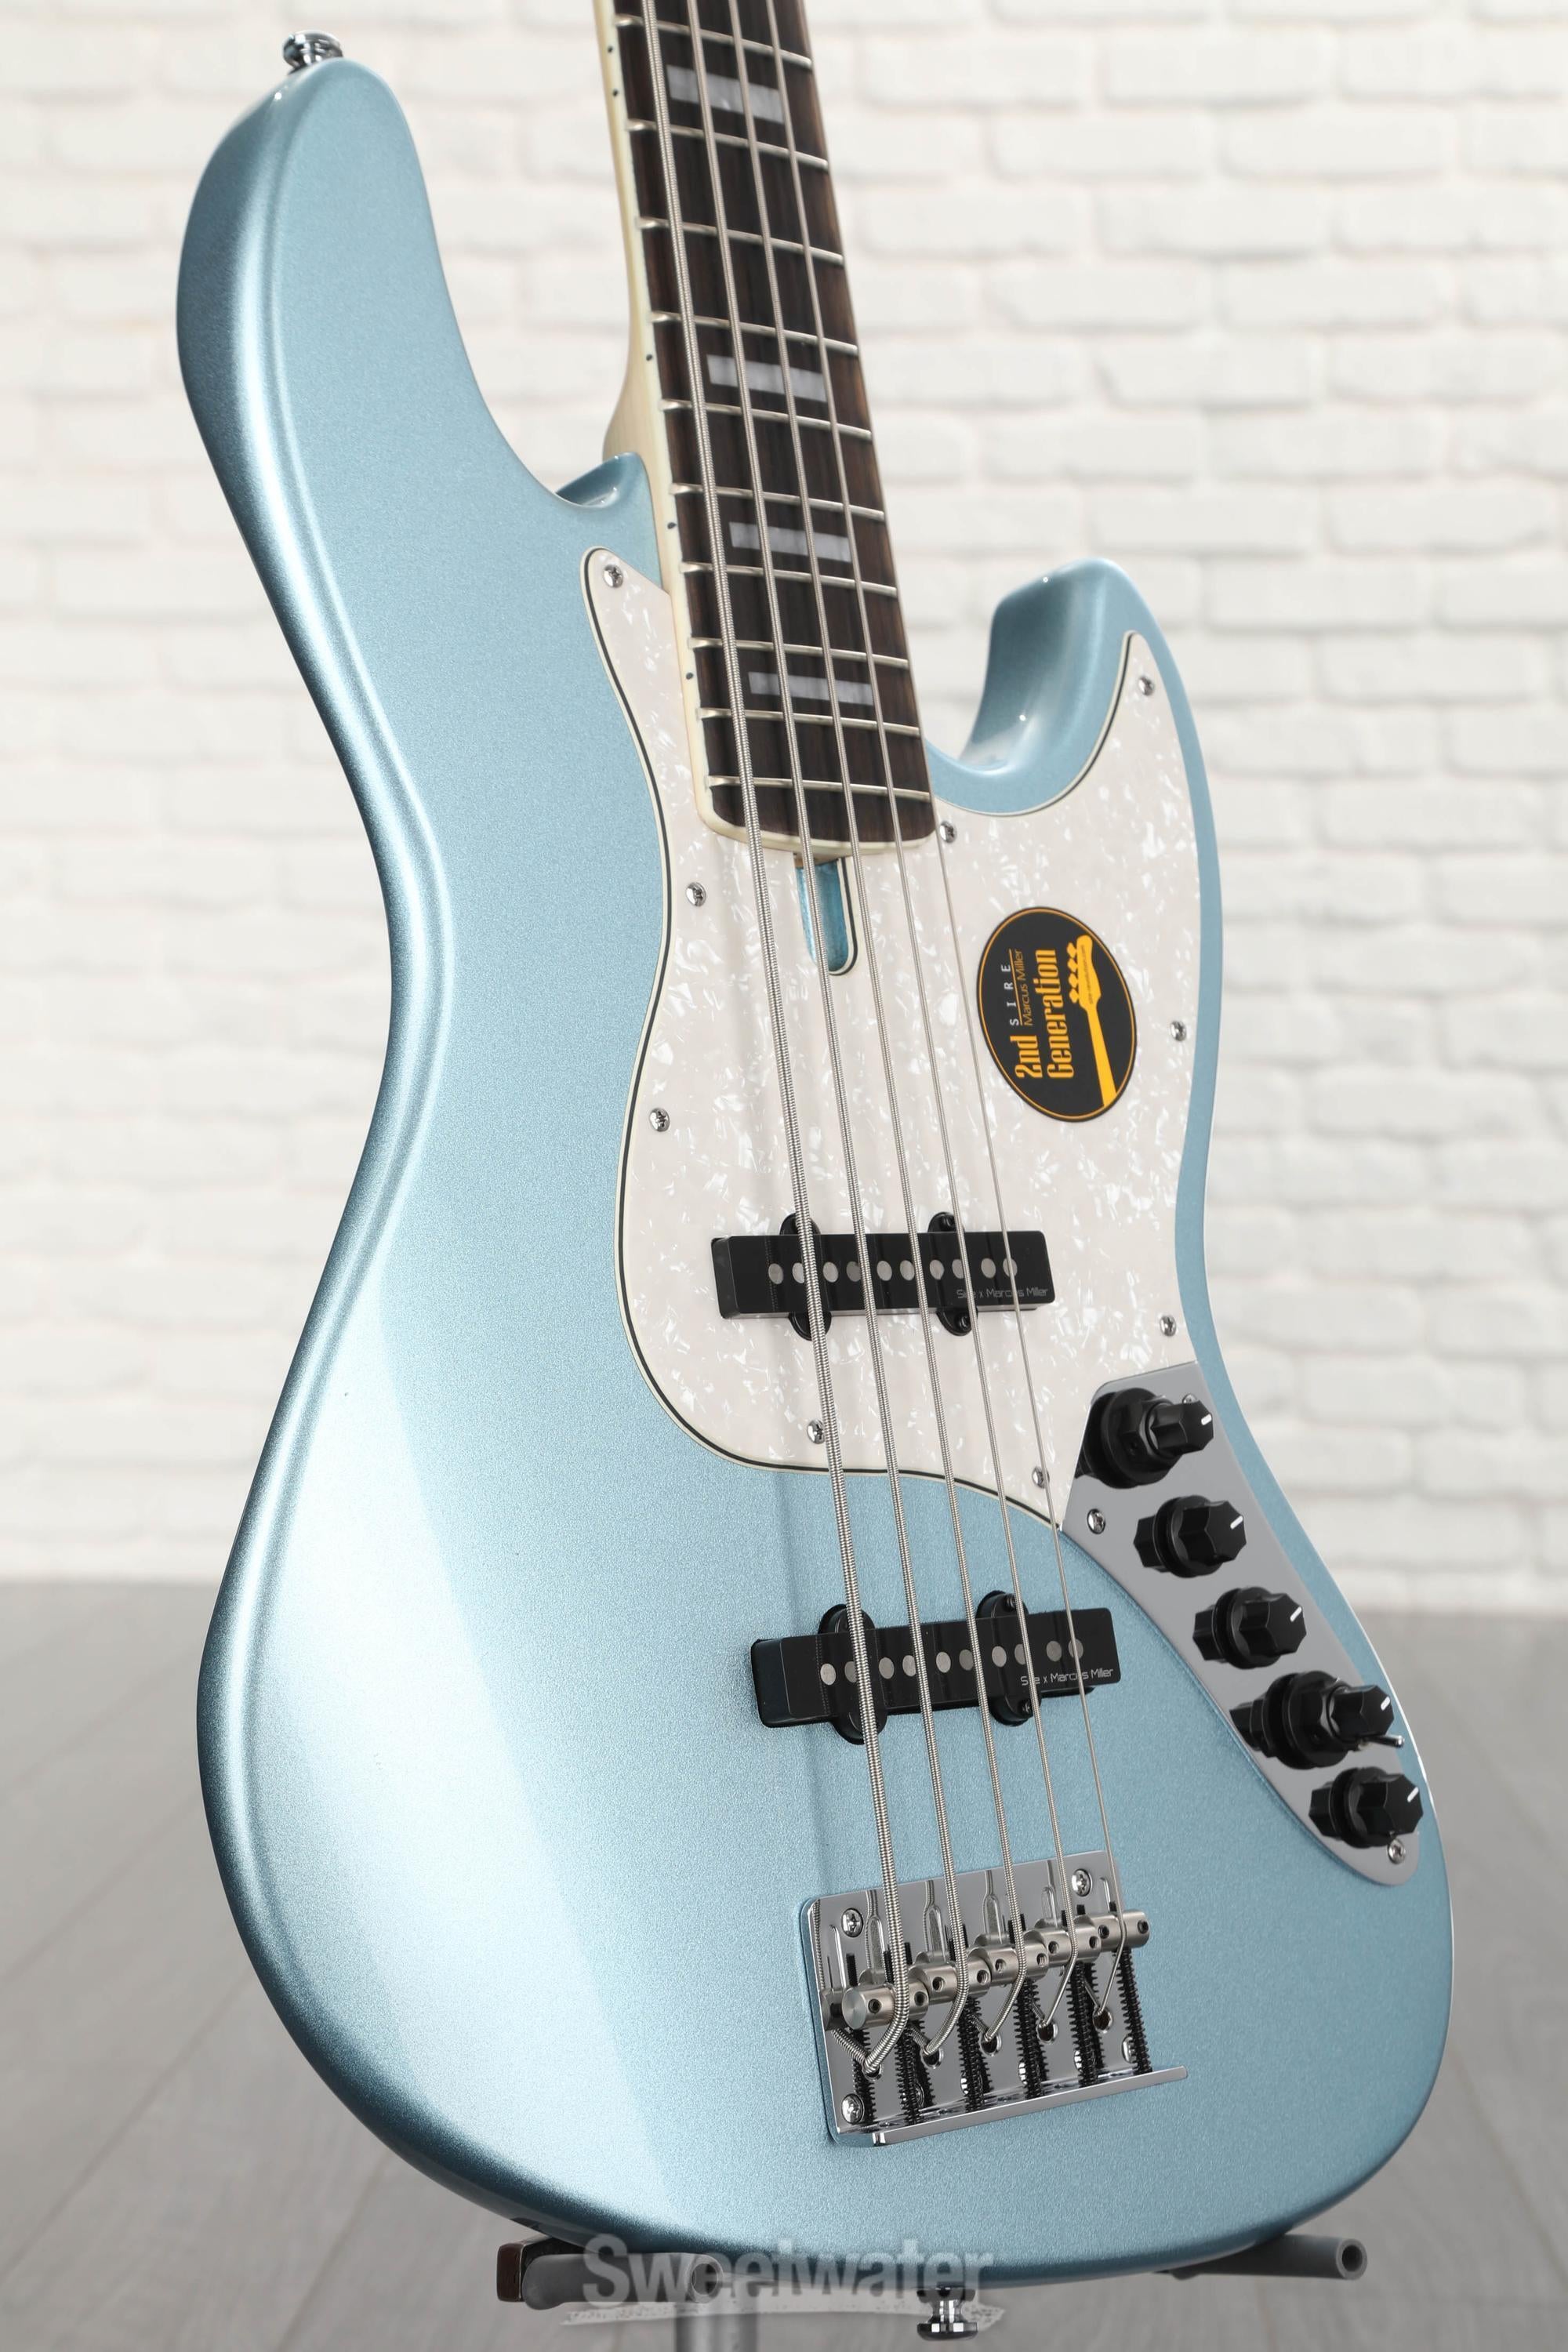 Sire Marcus Miller V7 Alder 5-string Bass Guitar - Lake Placid Blue